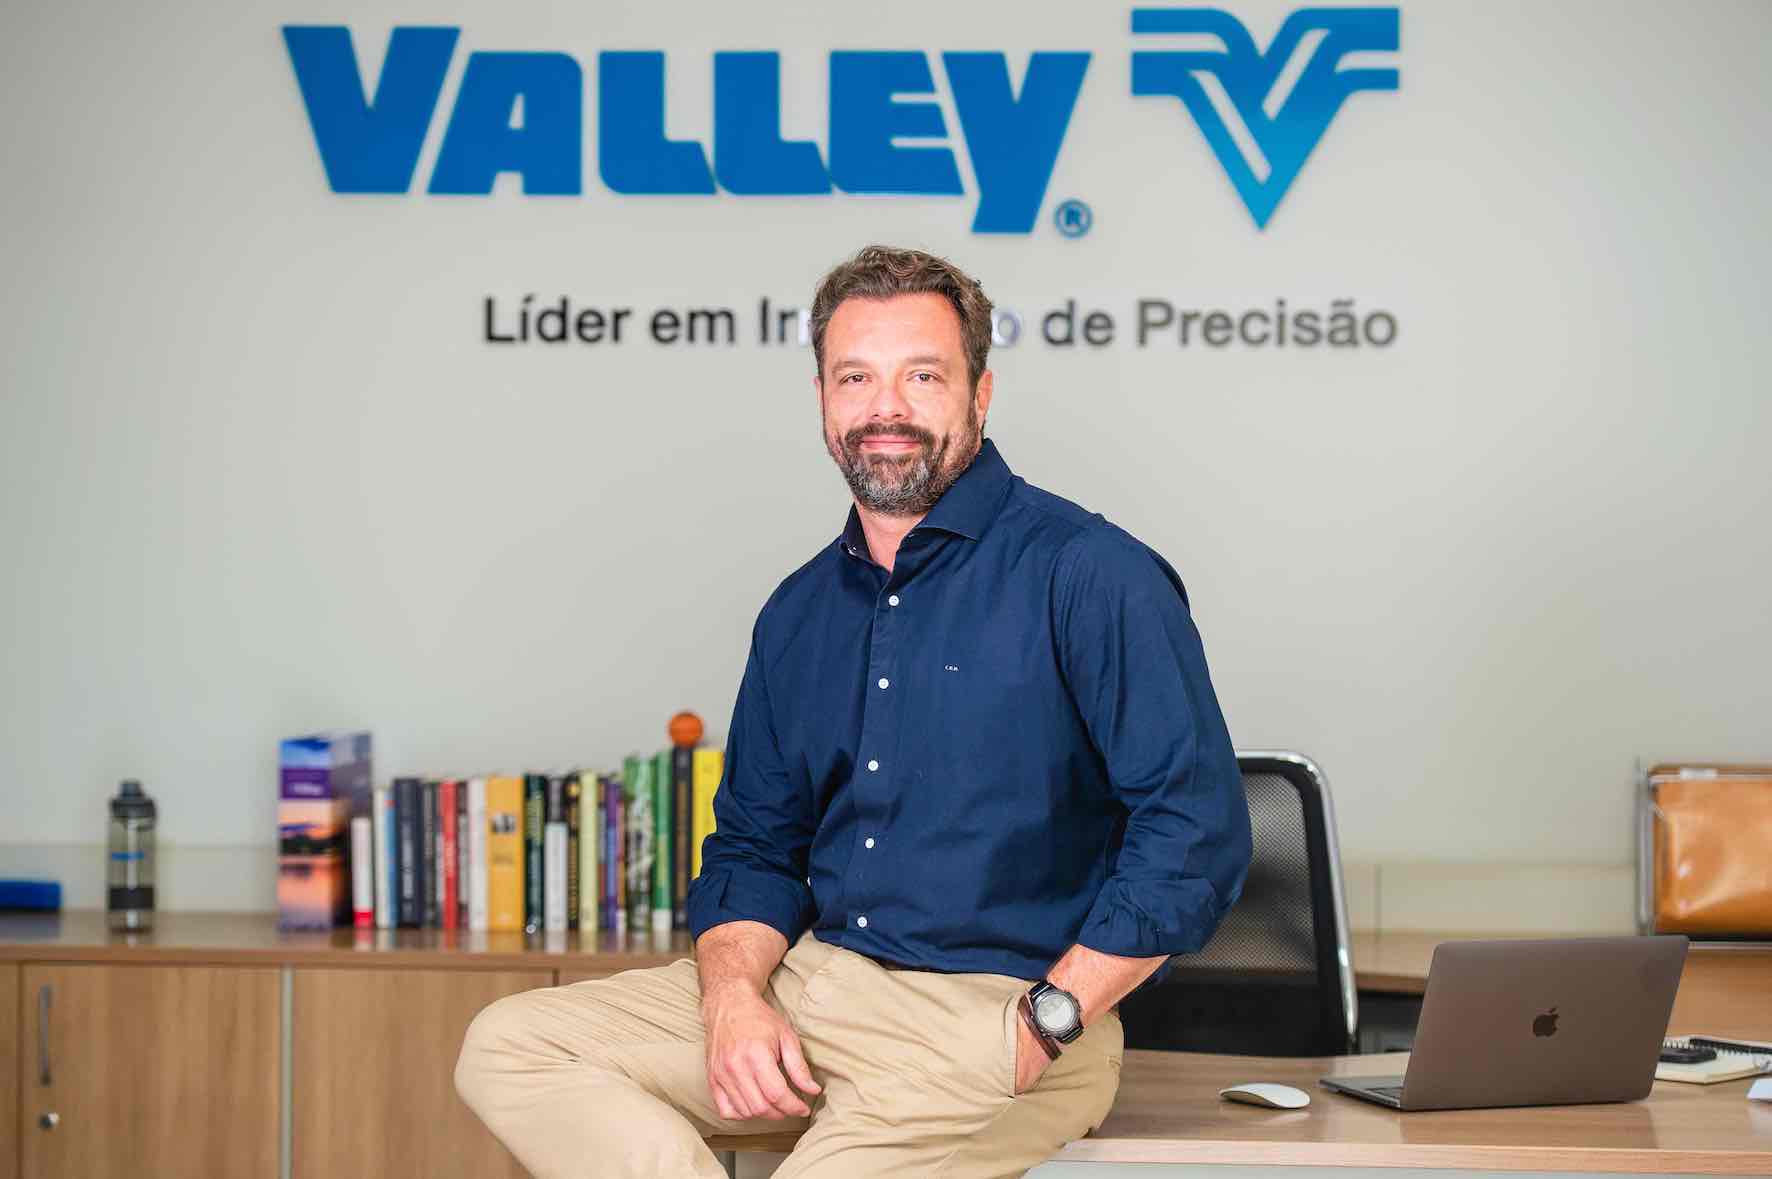 Valley – Brasil Irrigação